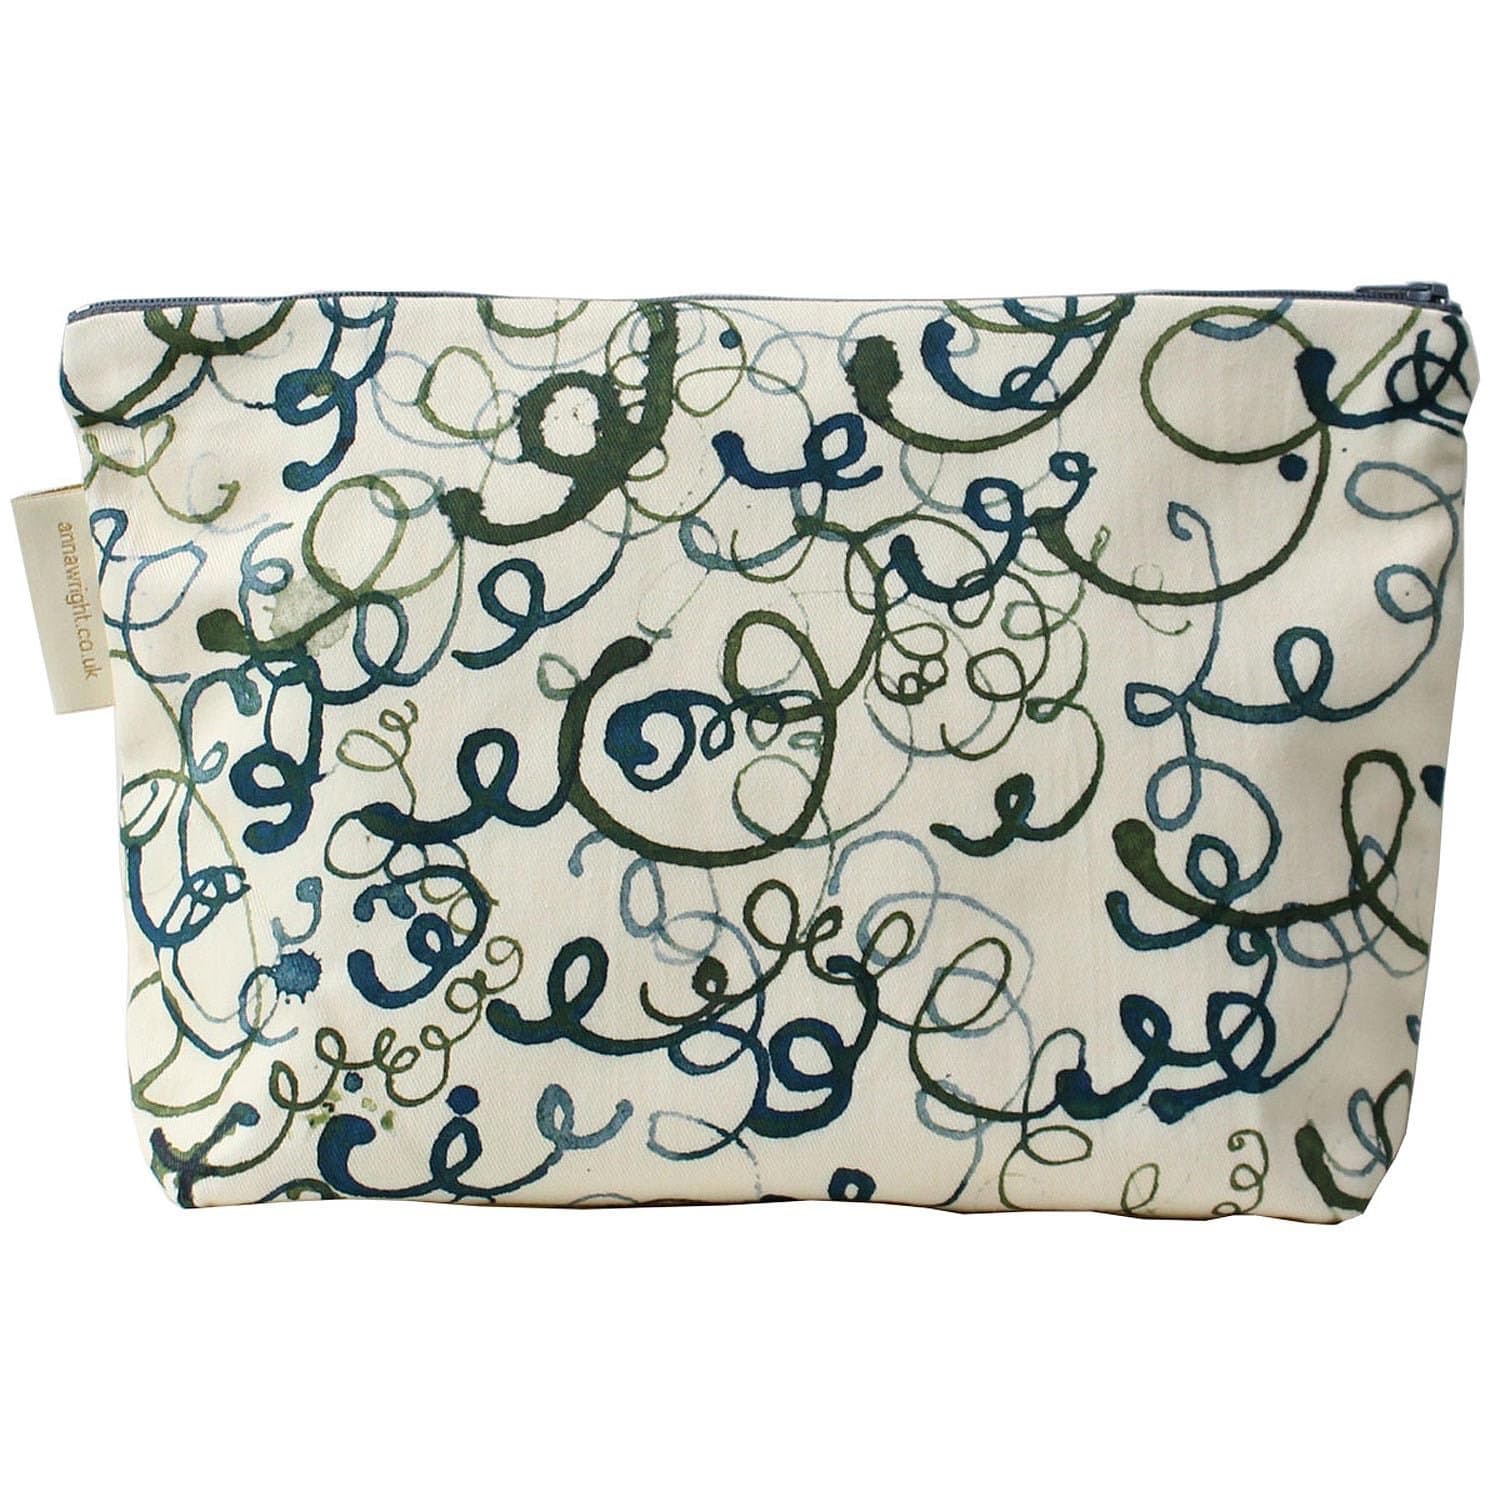 Anna Wright Make Up Bag "The Knitting Circle" Design